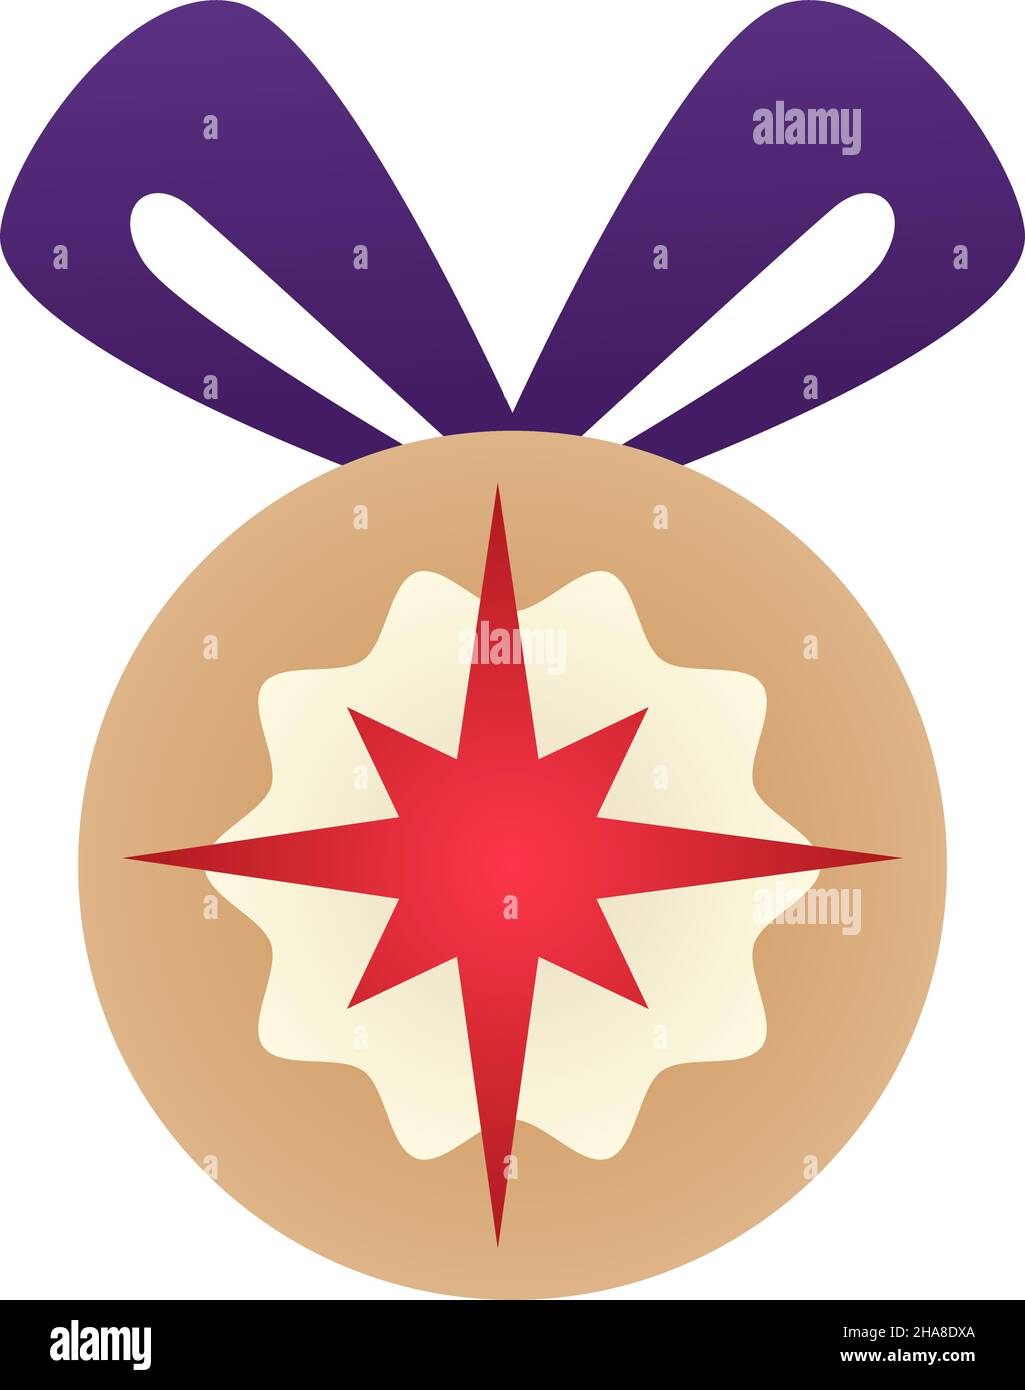 Miguel Ángel suficiente Festival Bola para decoración de árbol de Navidad, bola aislada con copo de nieve o  estampado de estrellas, lazo de cinta para colgar. Regalos simbólicos y  regalo de Navidad y Año Nuevo Imagen